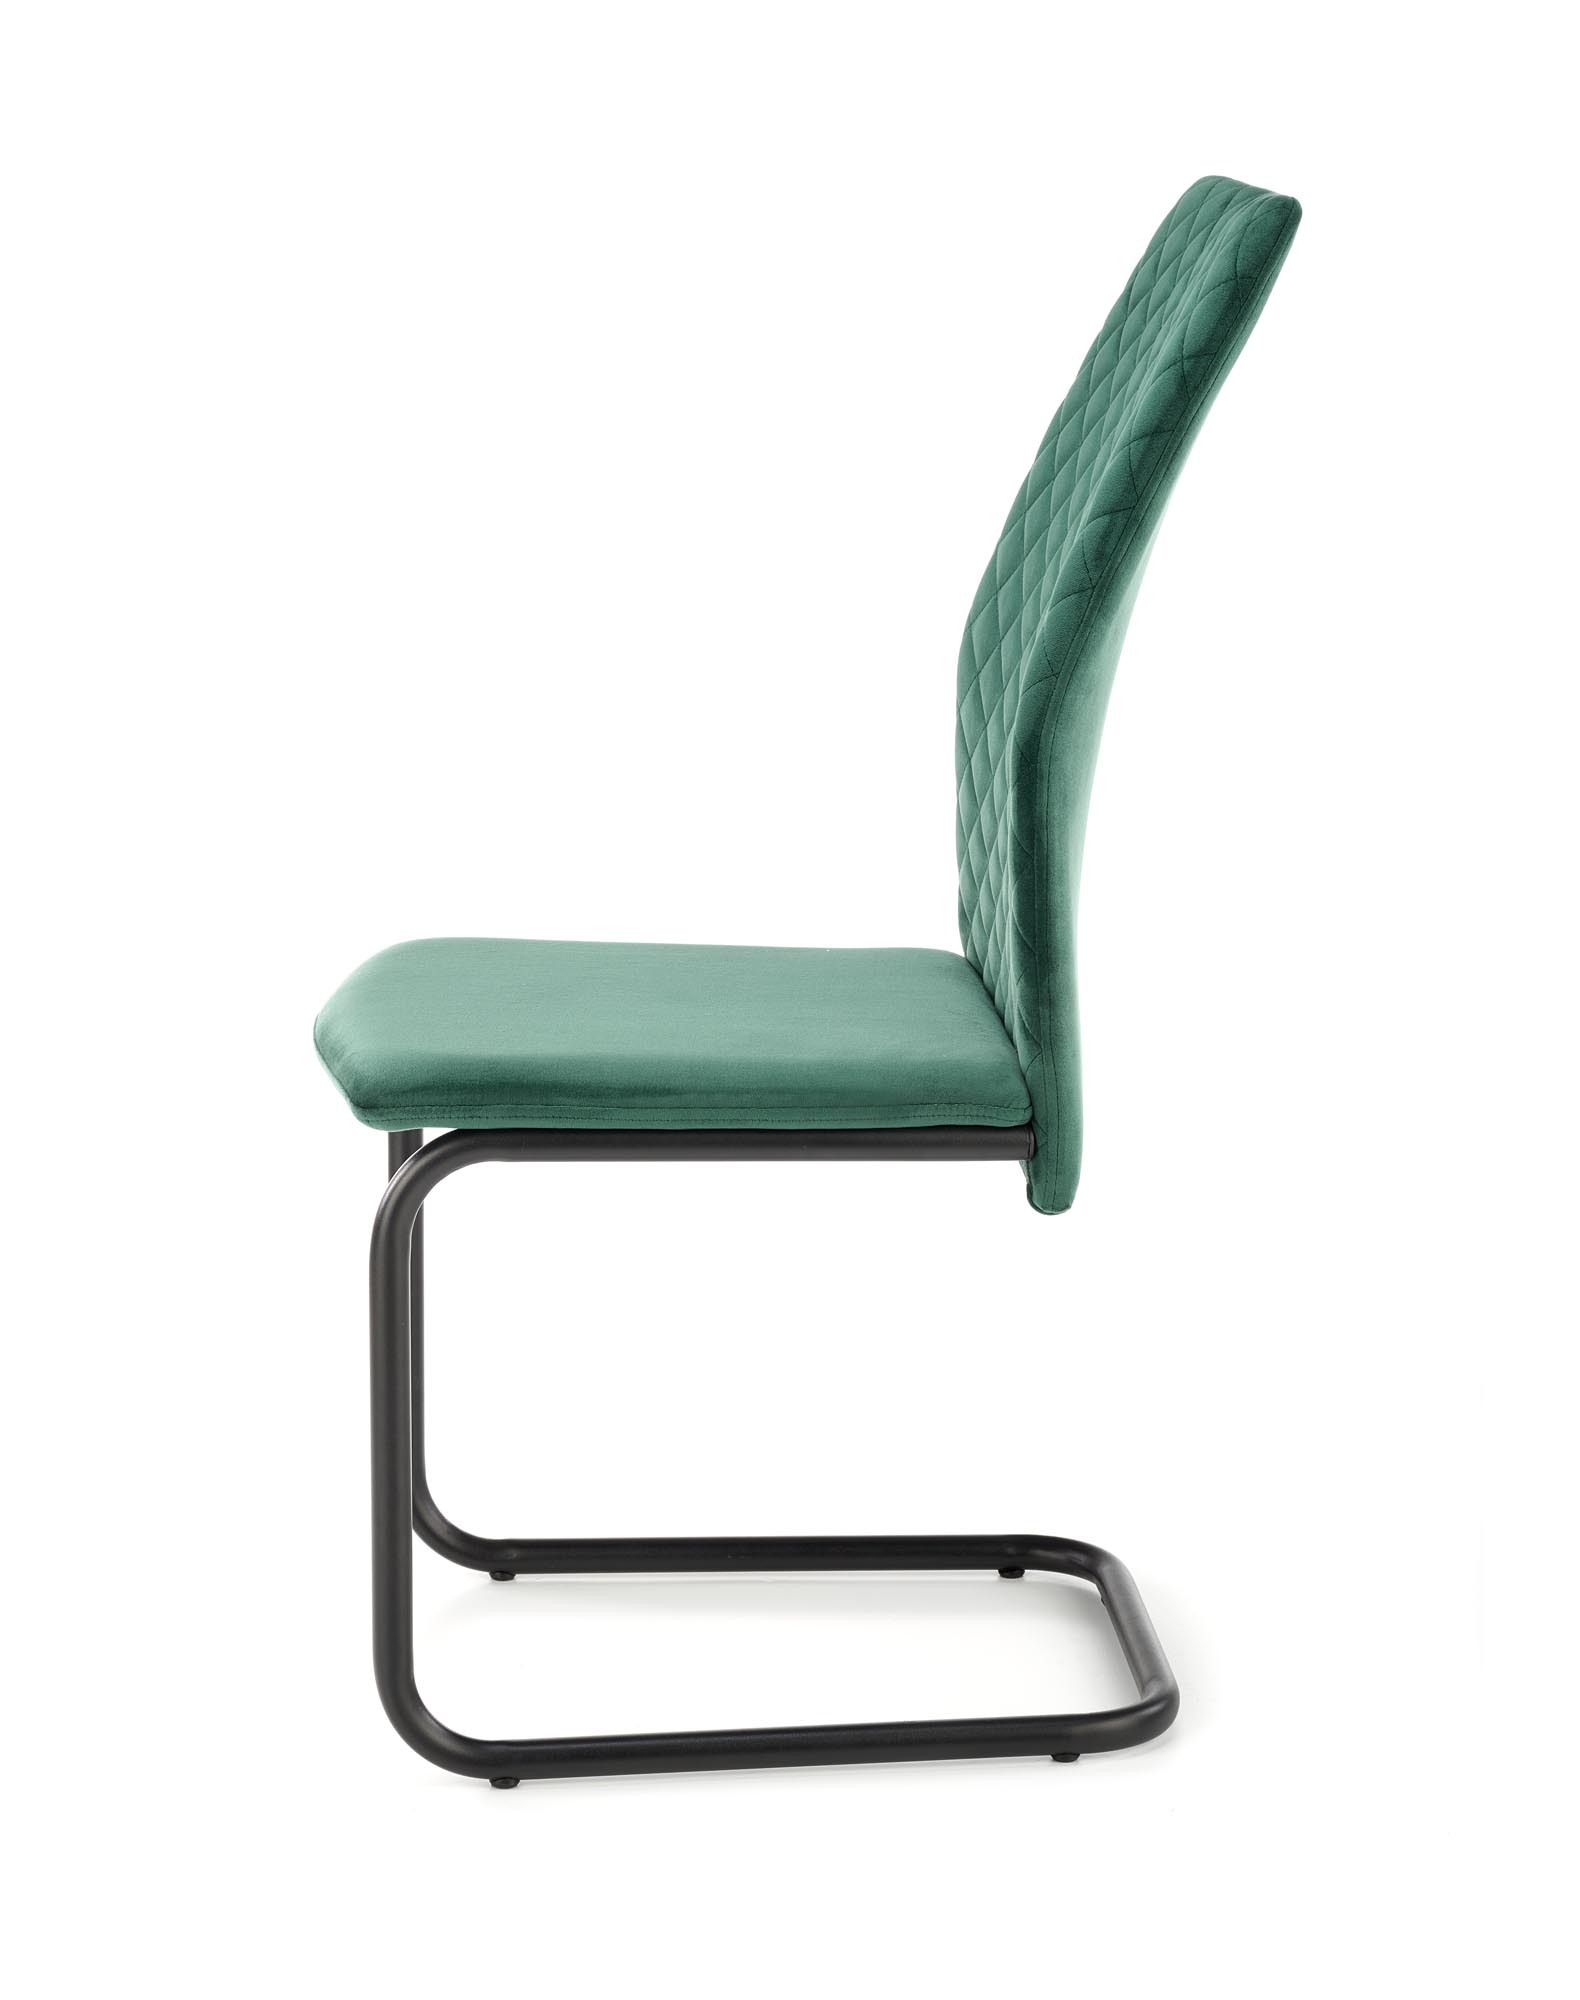 K444 krzesło ciemny zielony